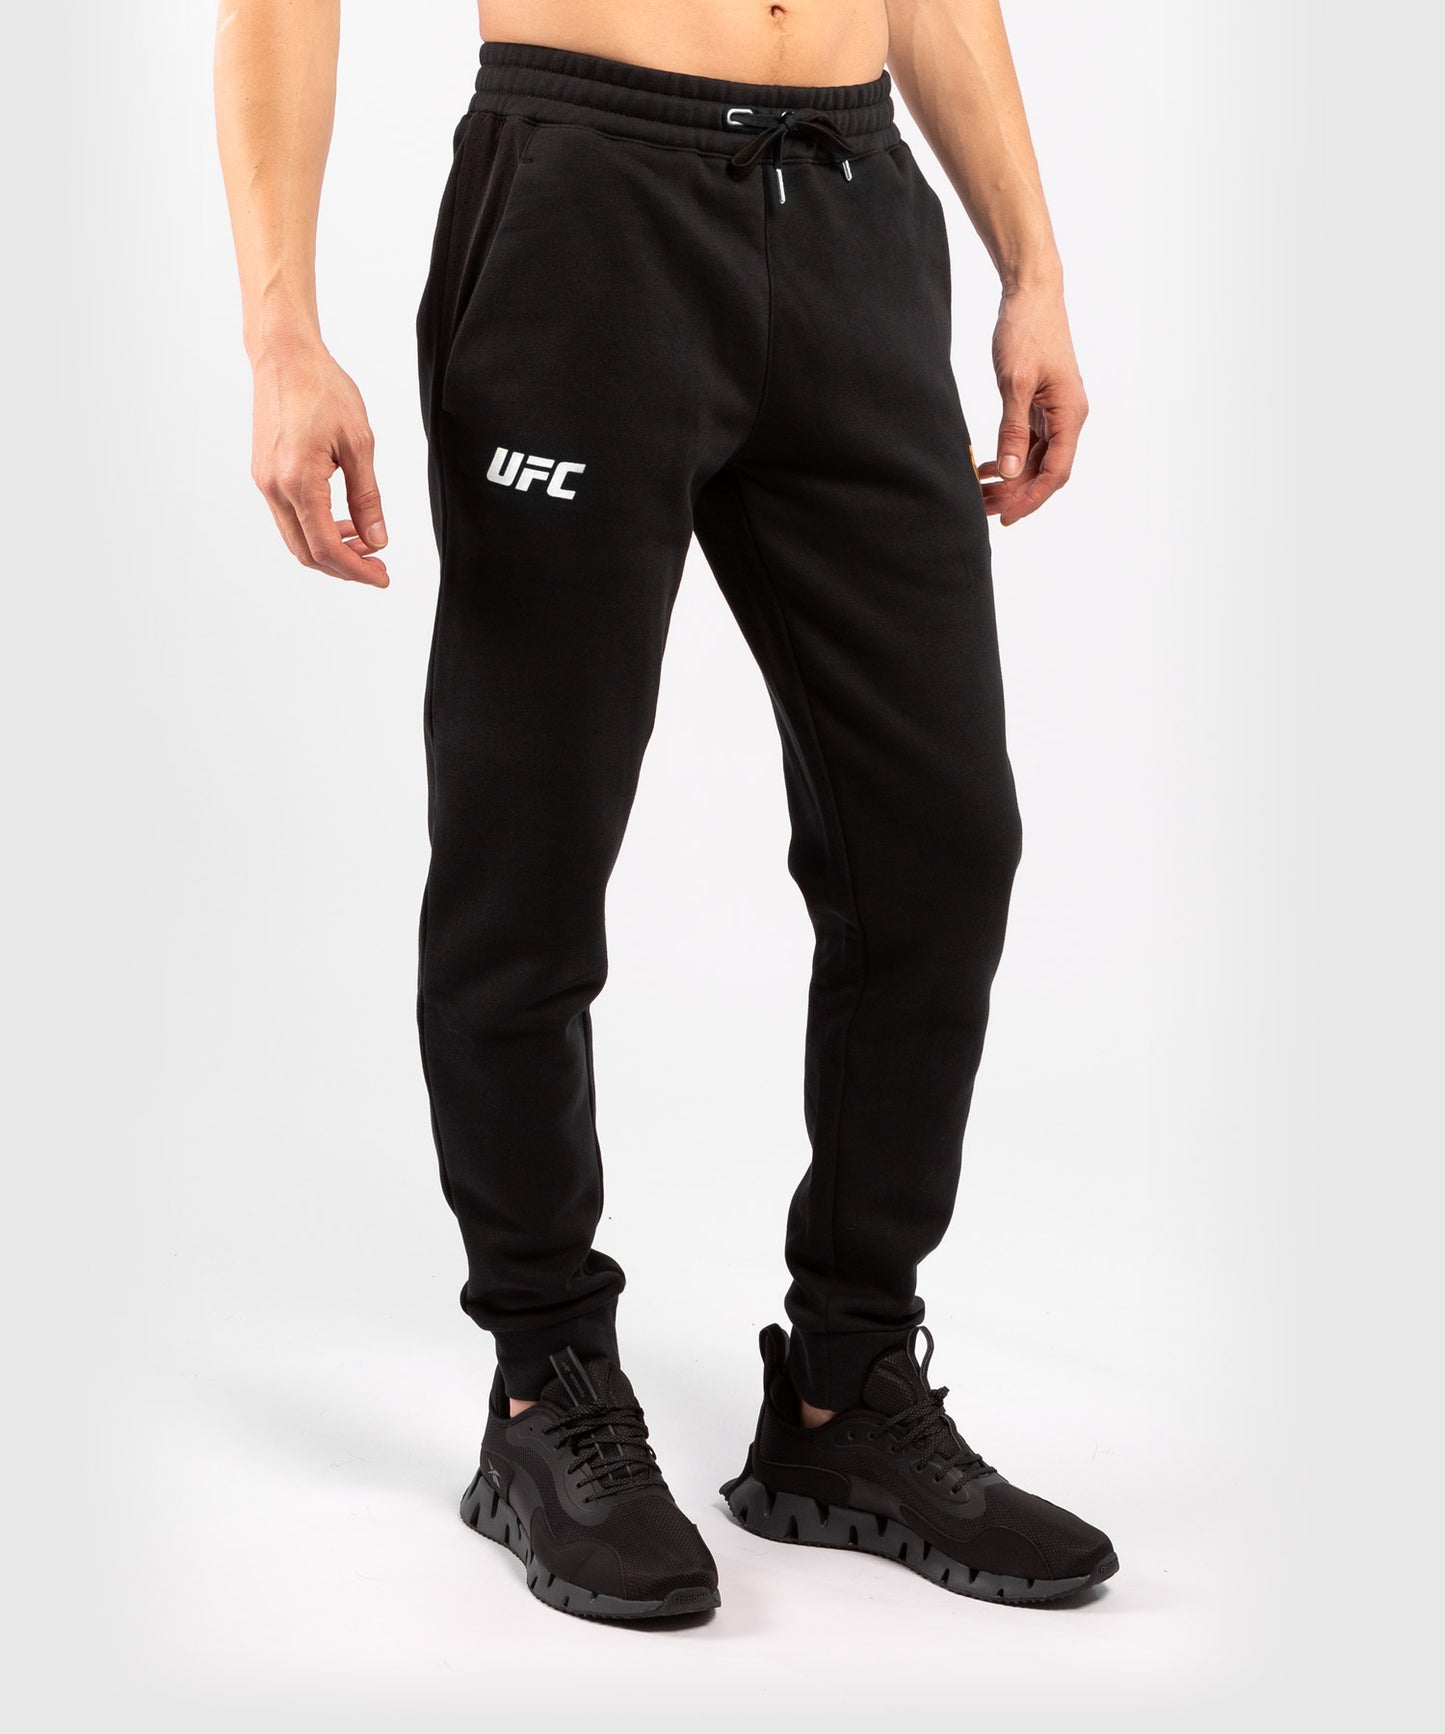 UFC Venum Replica Men's Pants - Black